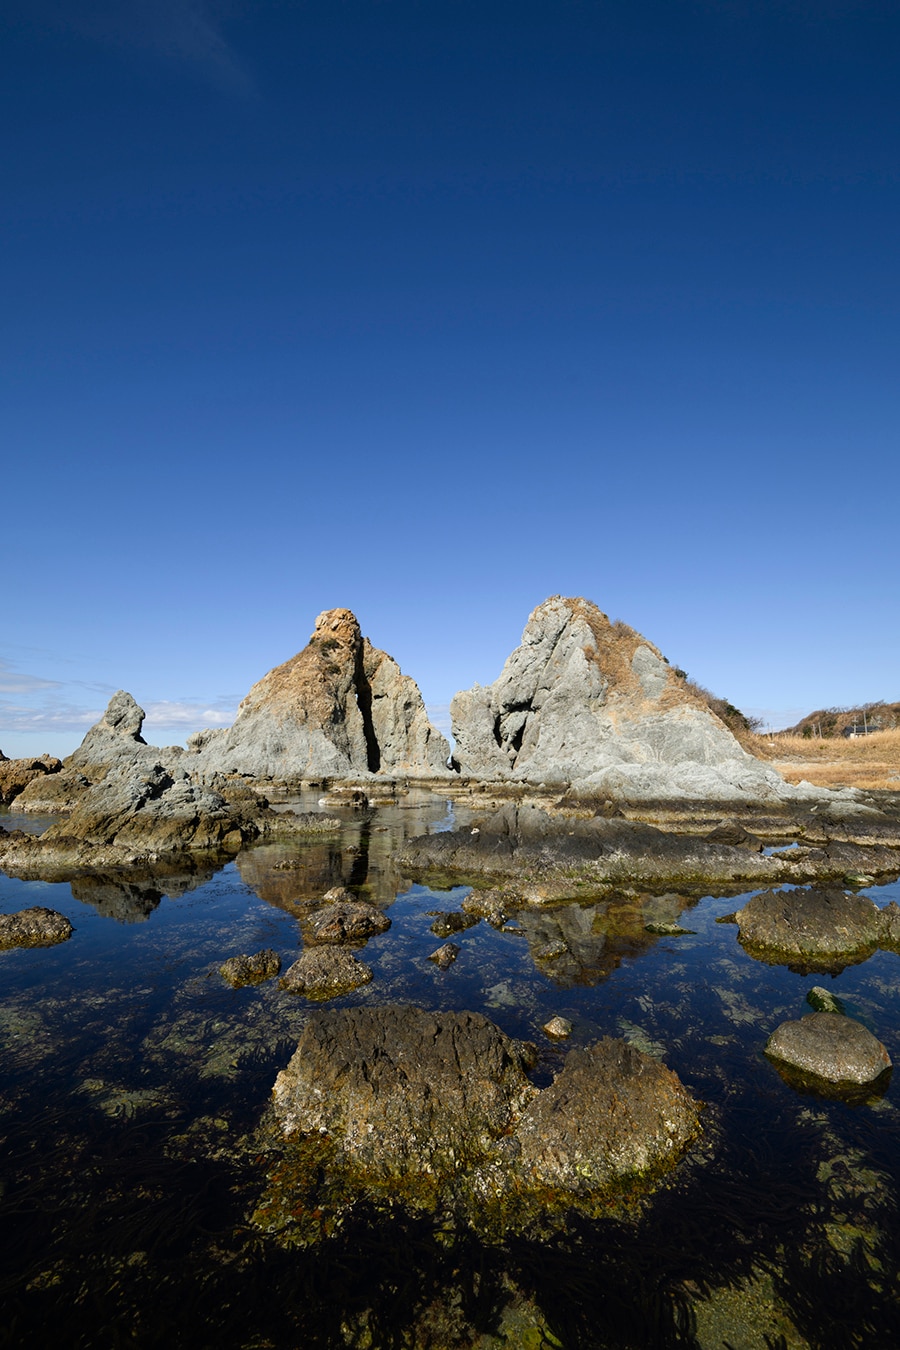 「古事記」の国生み神話に由来するとされる大きな2つの岩七浦海岸のシンボル「夫婦岩」。